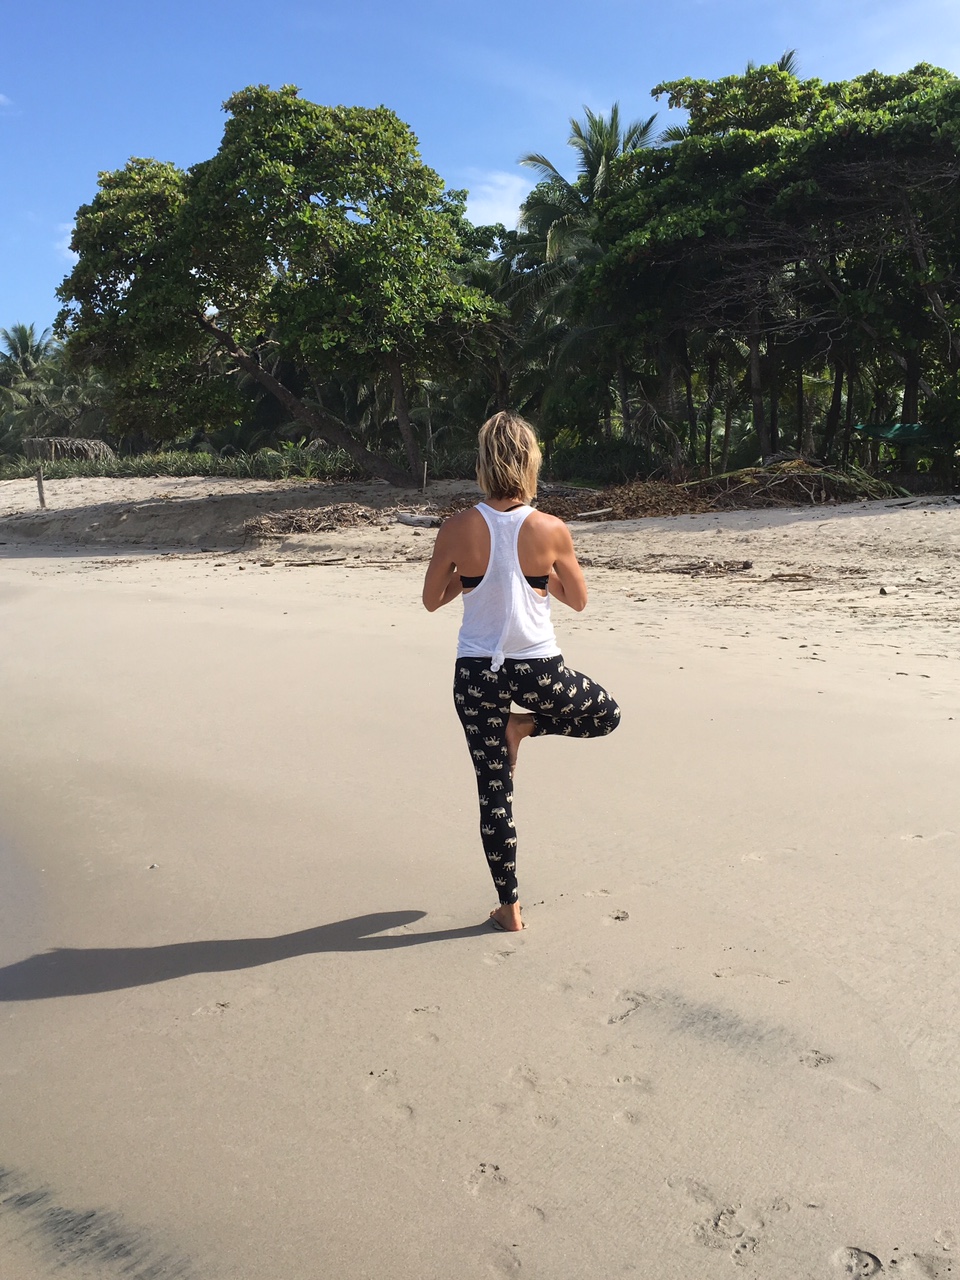 Yoga pose on a beach